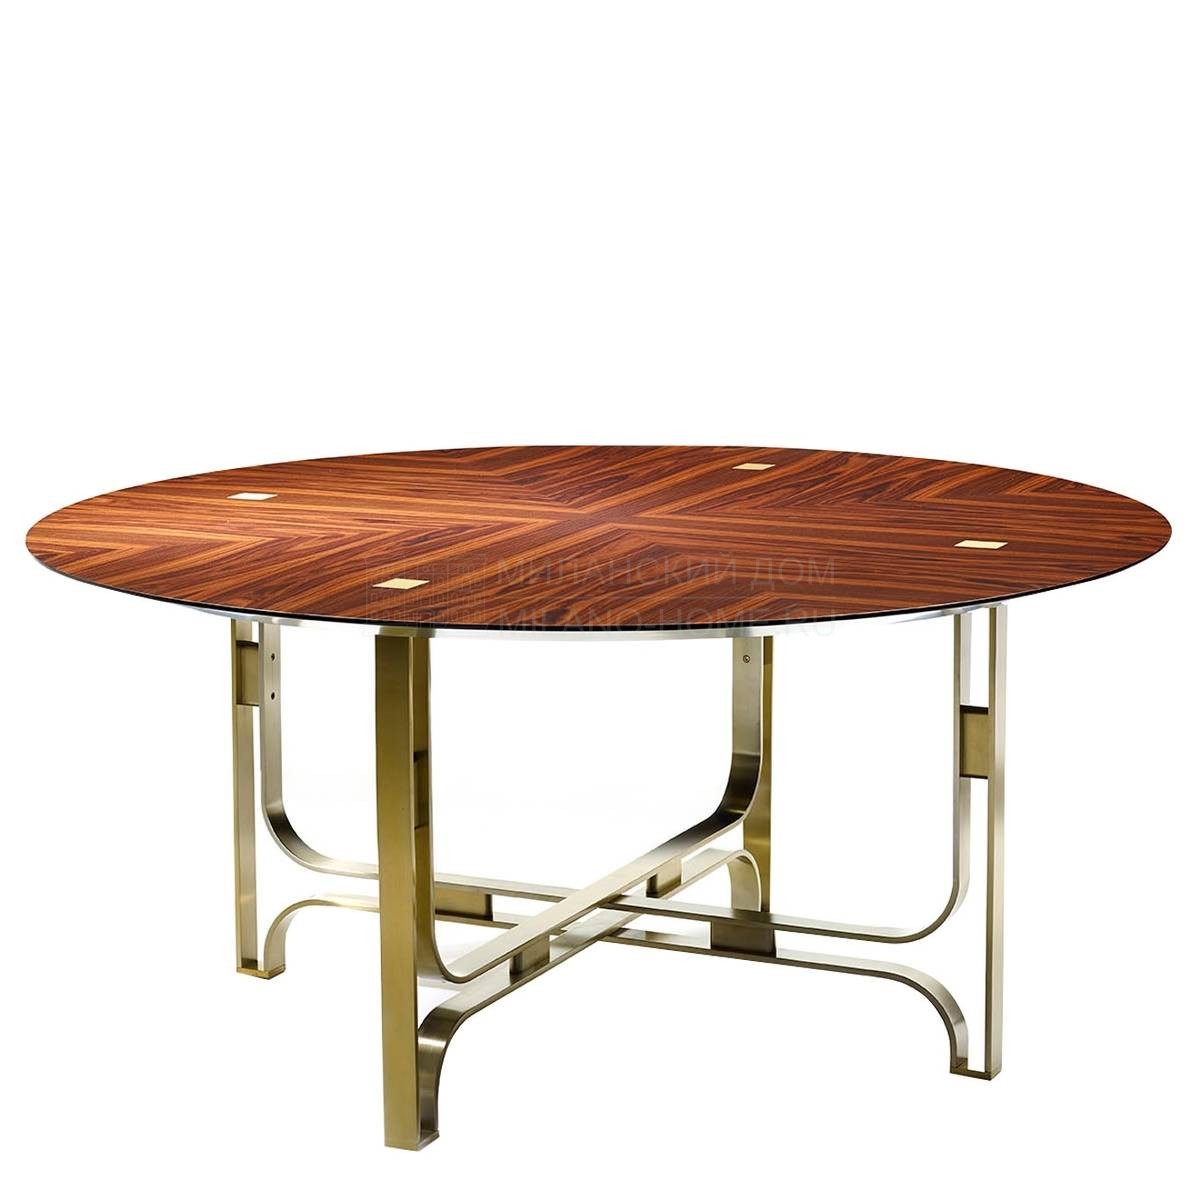 Круглый стол Gregory round table из Италии фабрики MARIONI